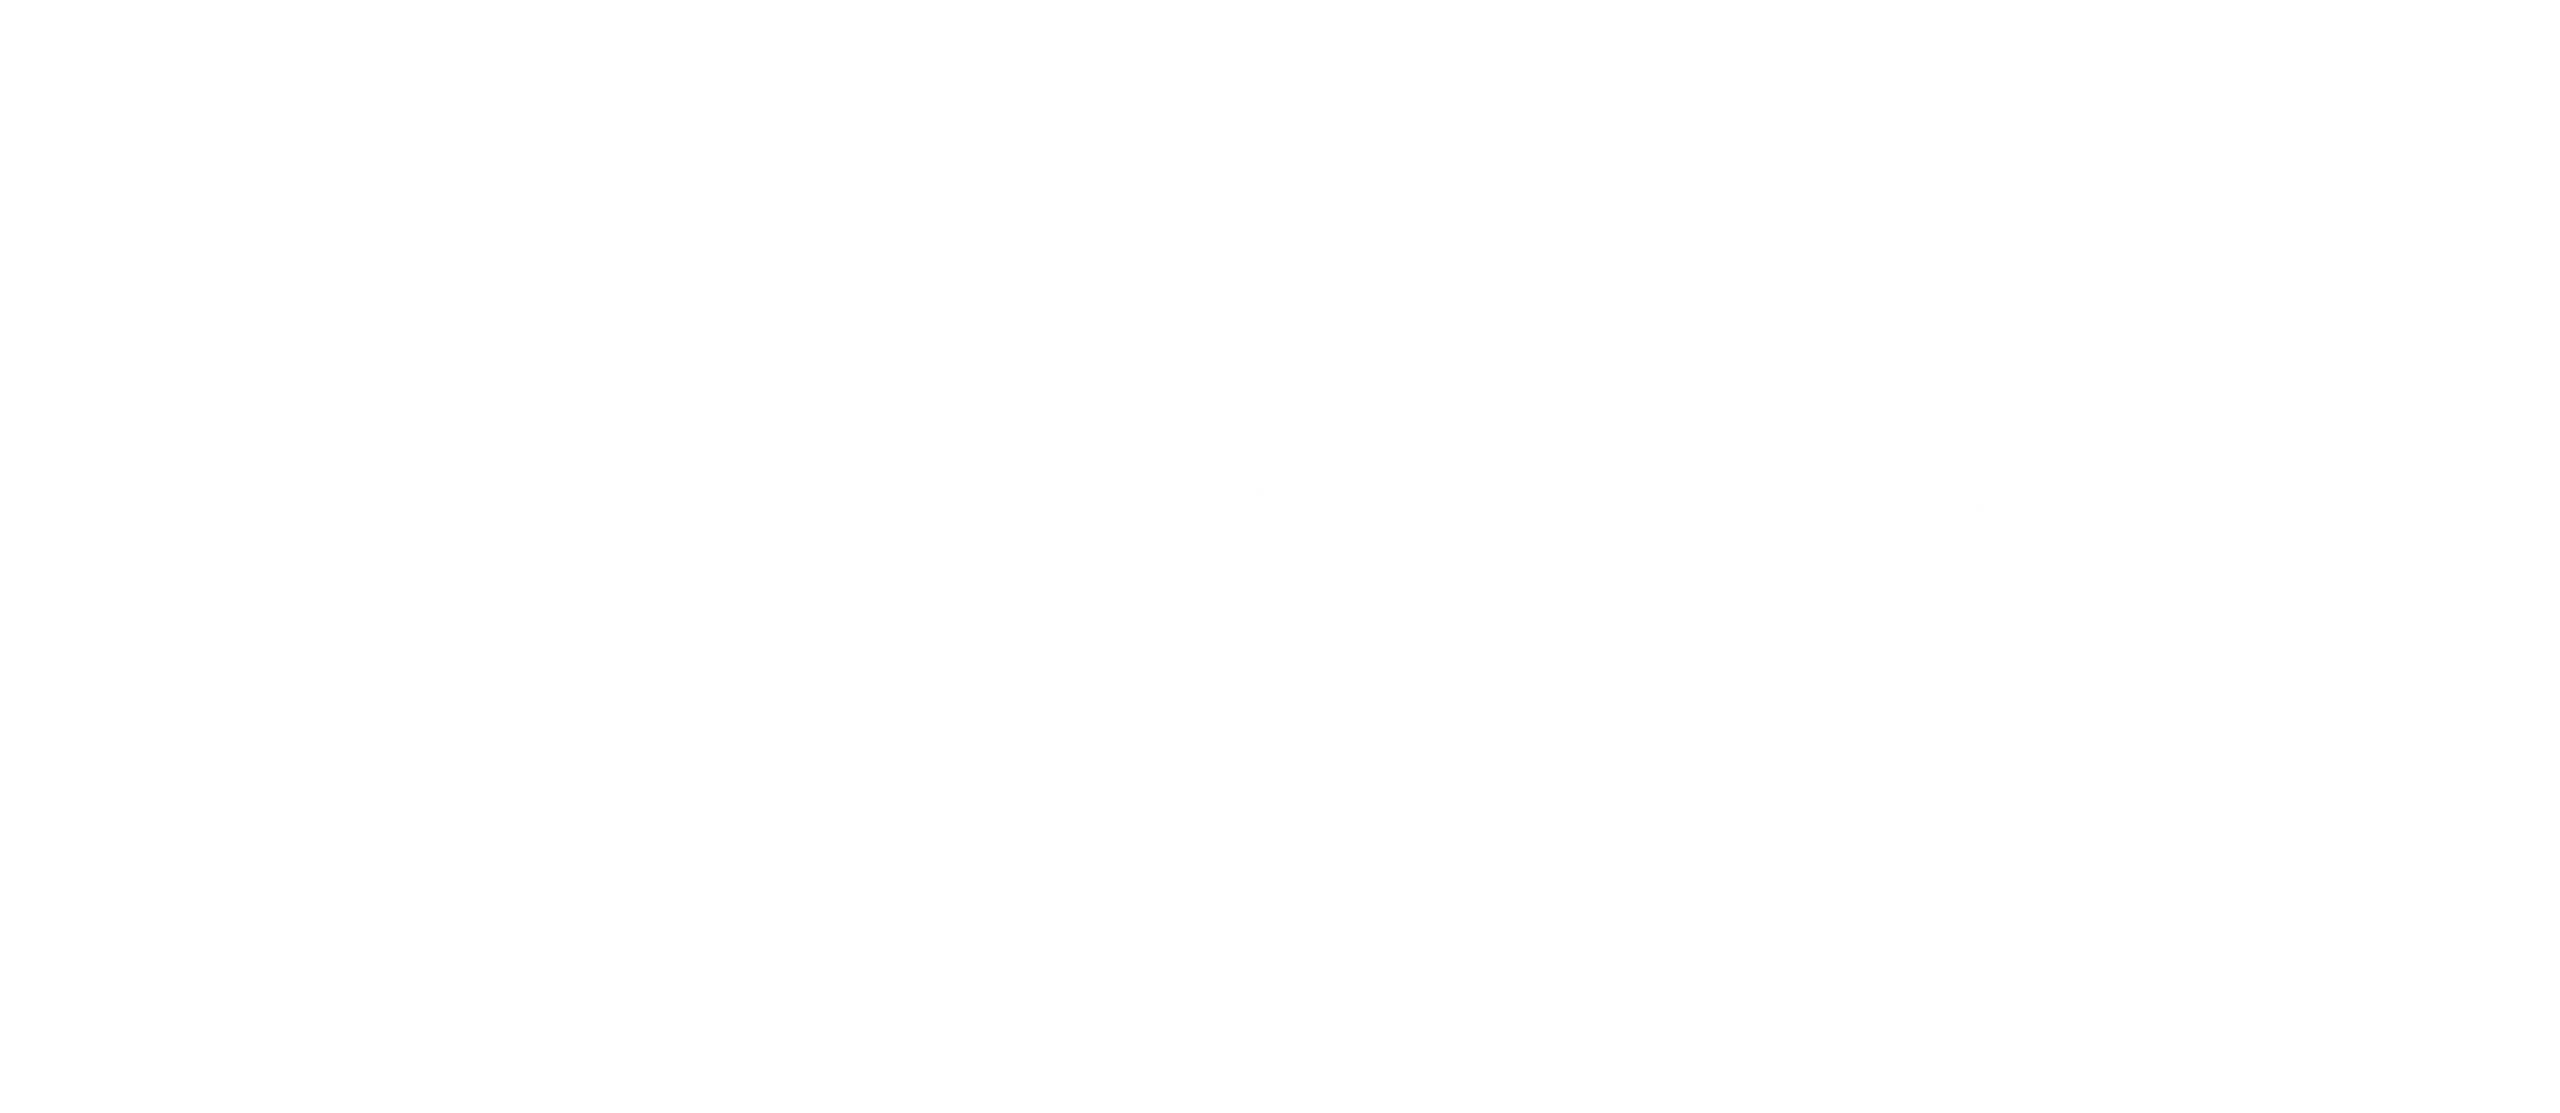 lazoAcademy01